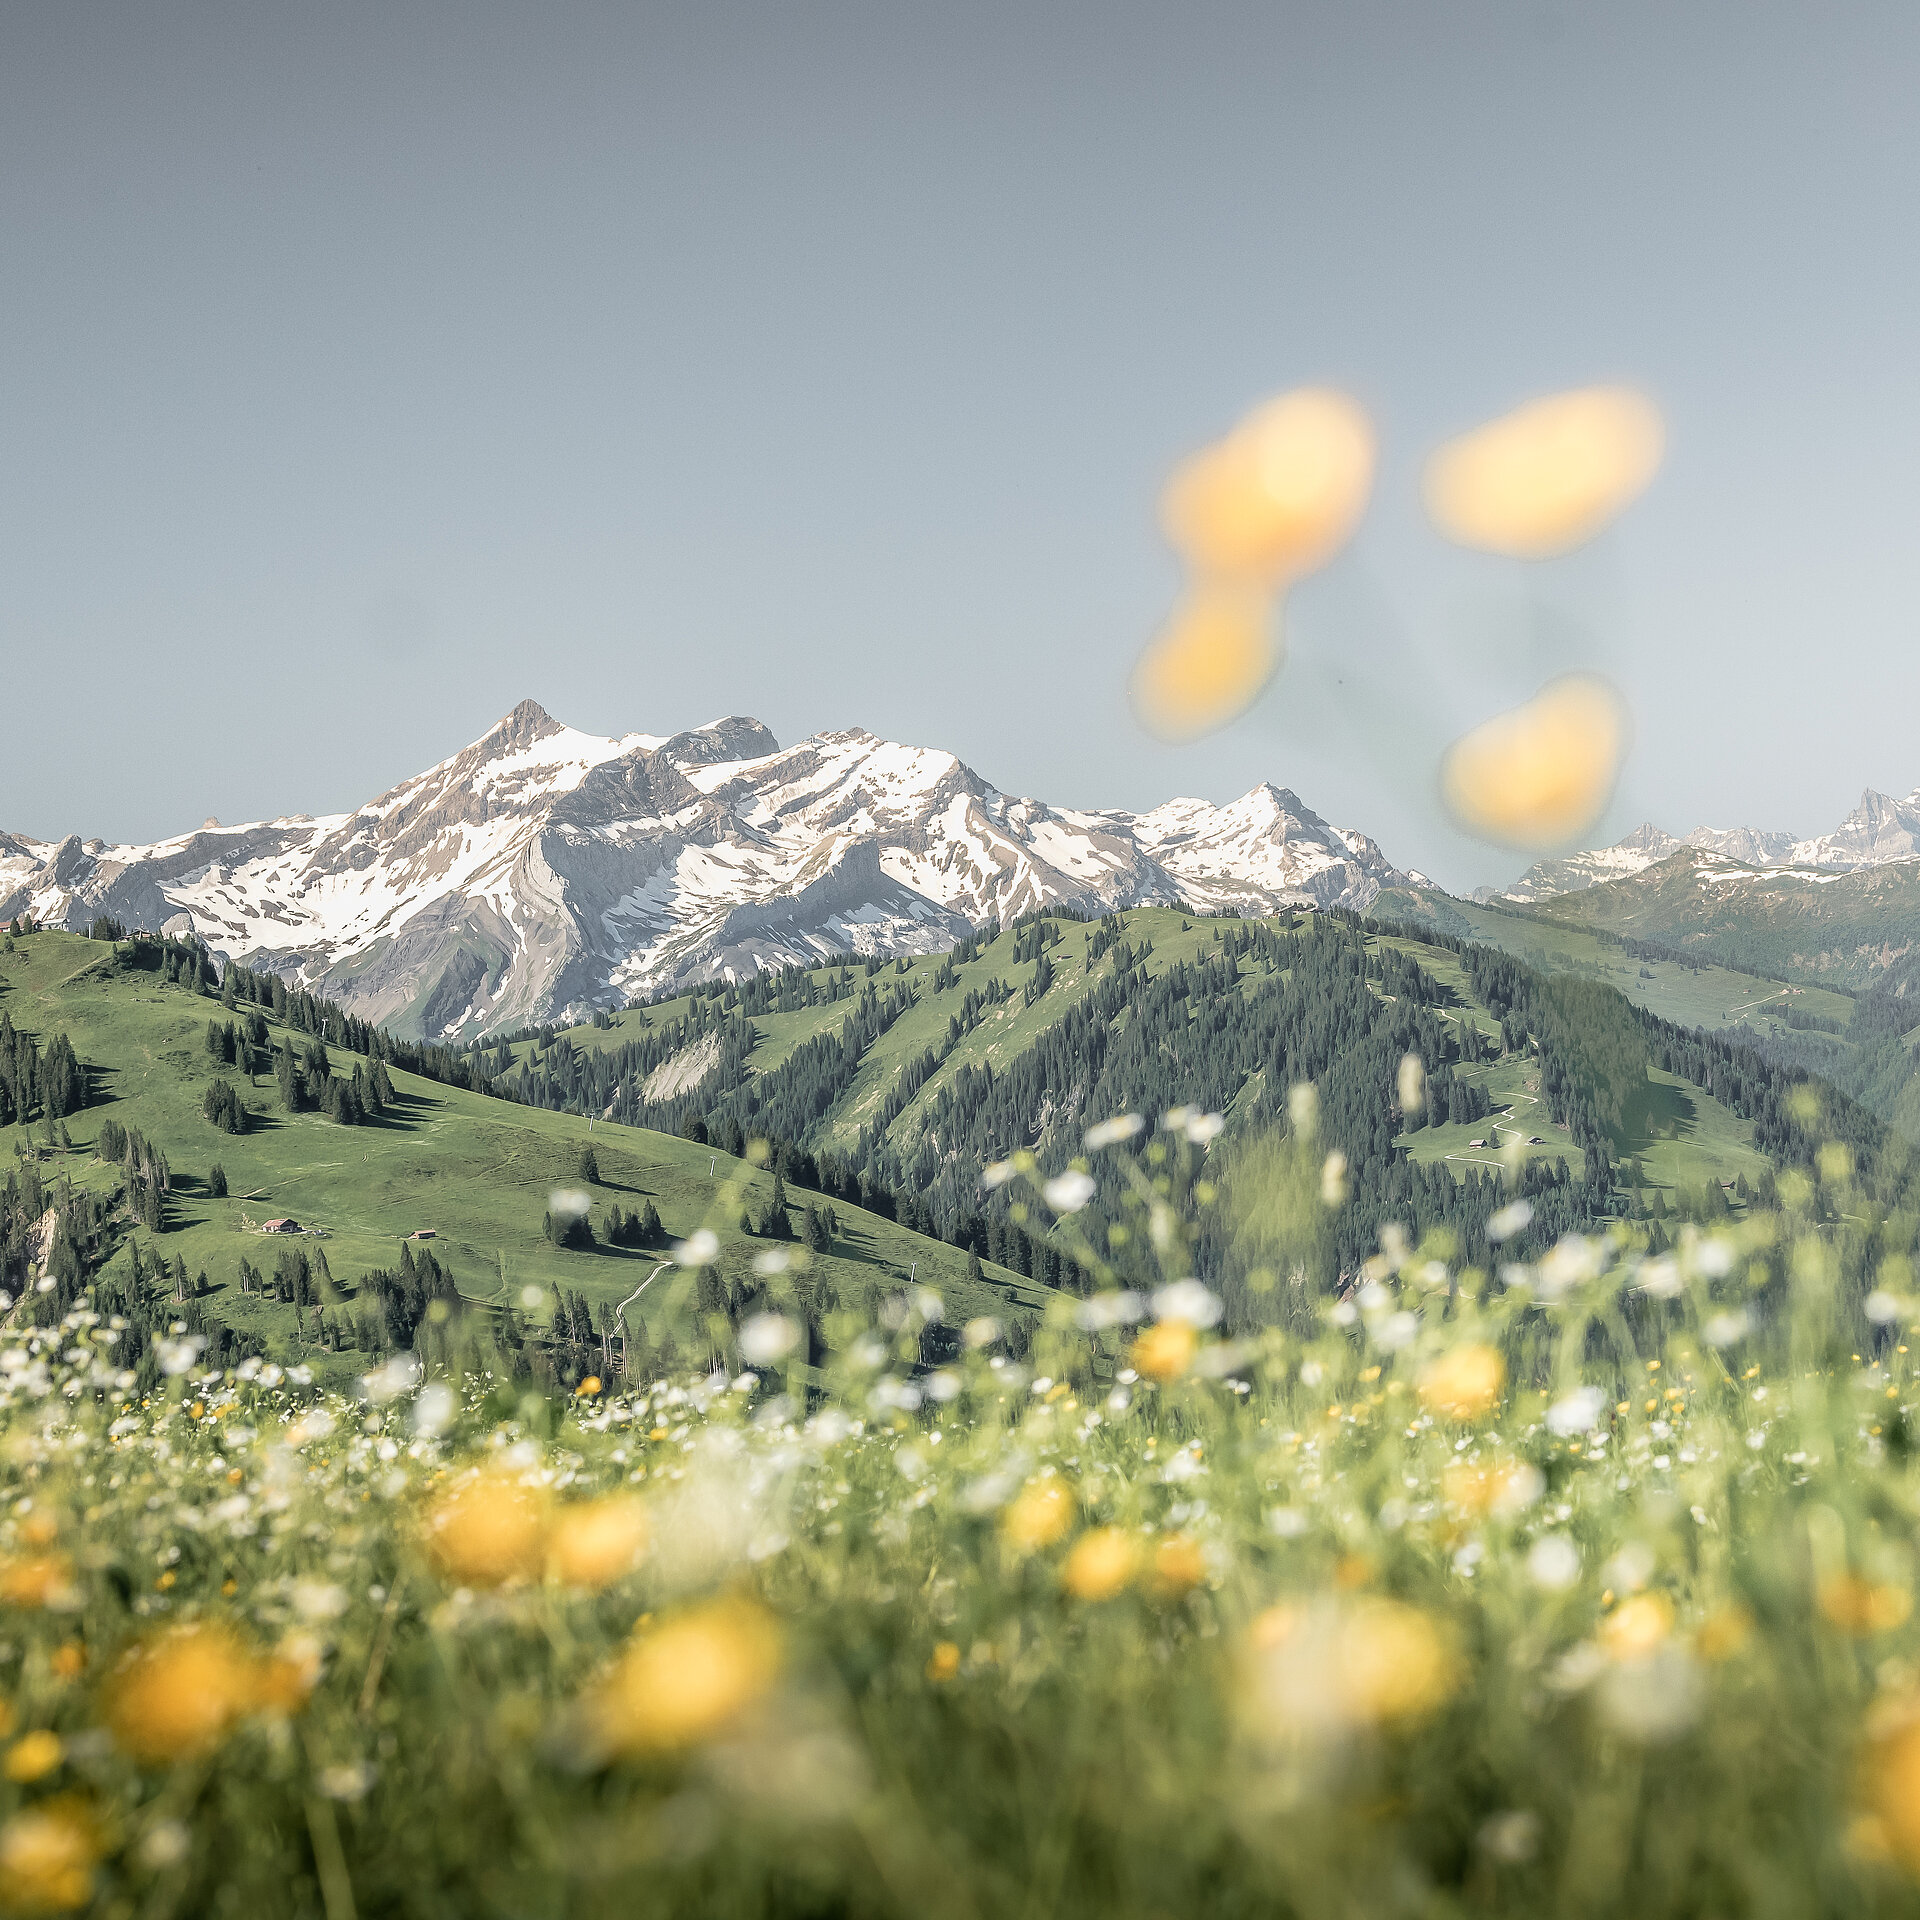 Schönes Bergpanorama in der Skiwelt Gstaad mit einer bunten Blumenwiese im Vordergrund.